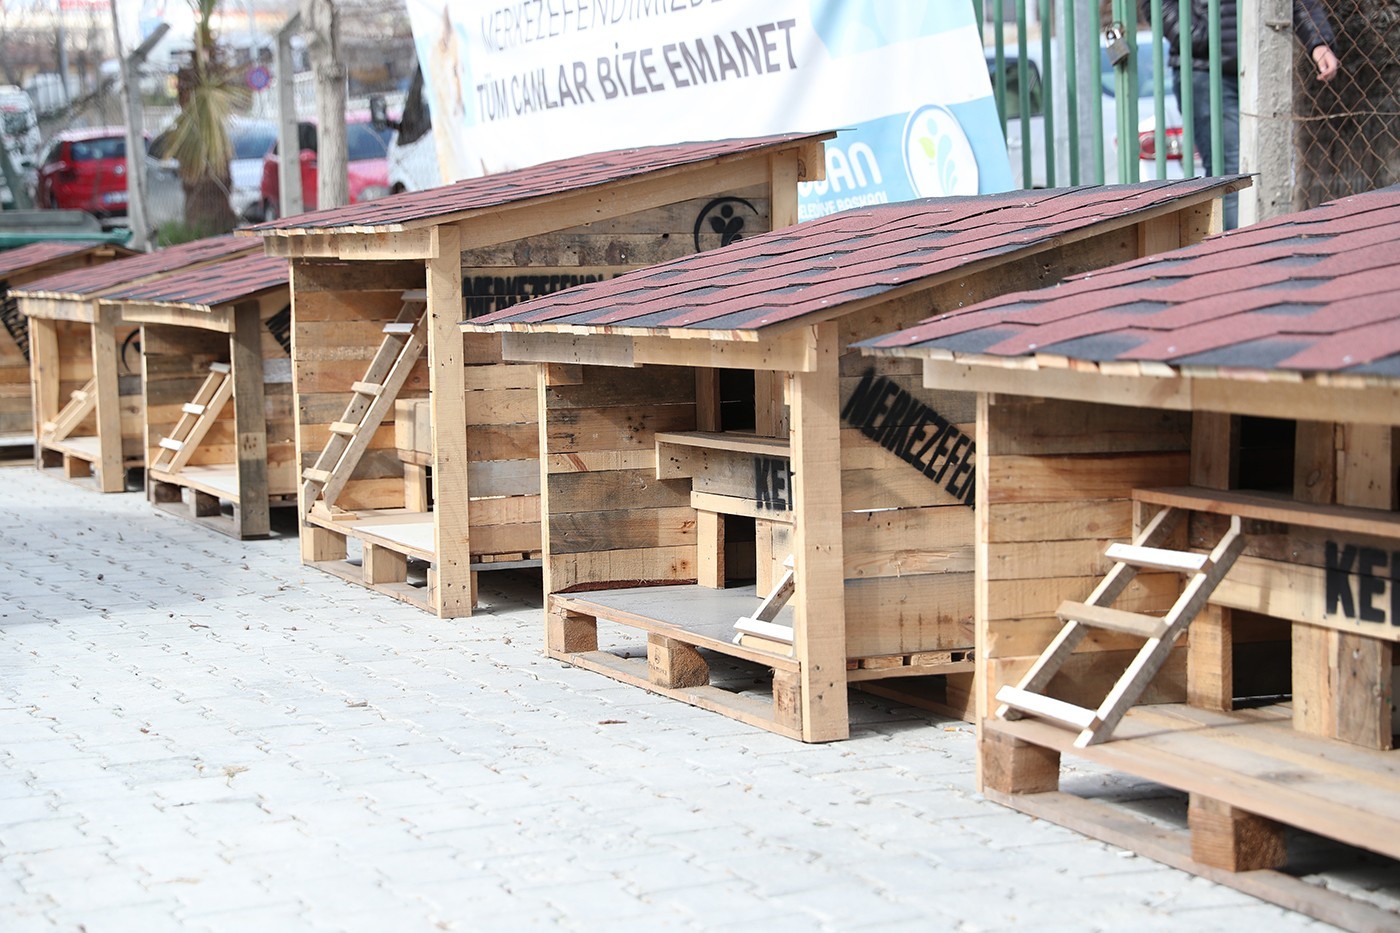 Pet Kafe ve Mama Üretim Tesisi Türkiye’ye örnek oldu